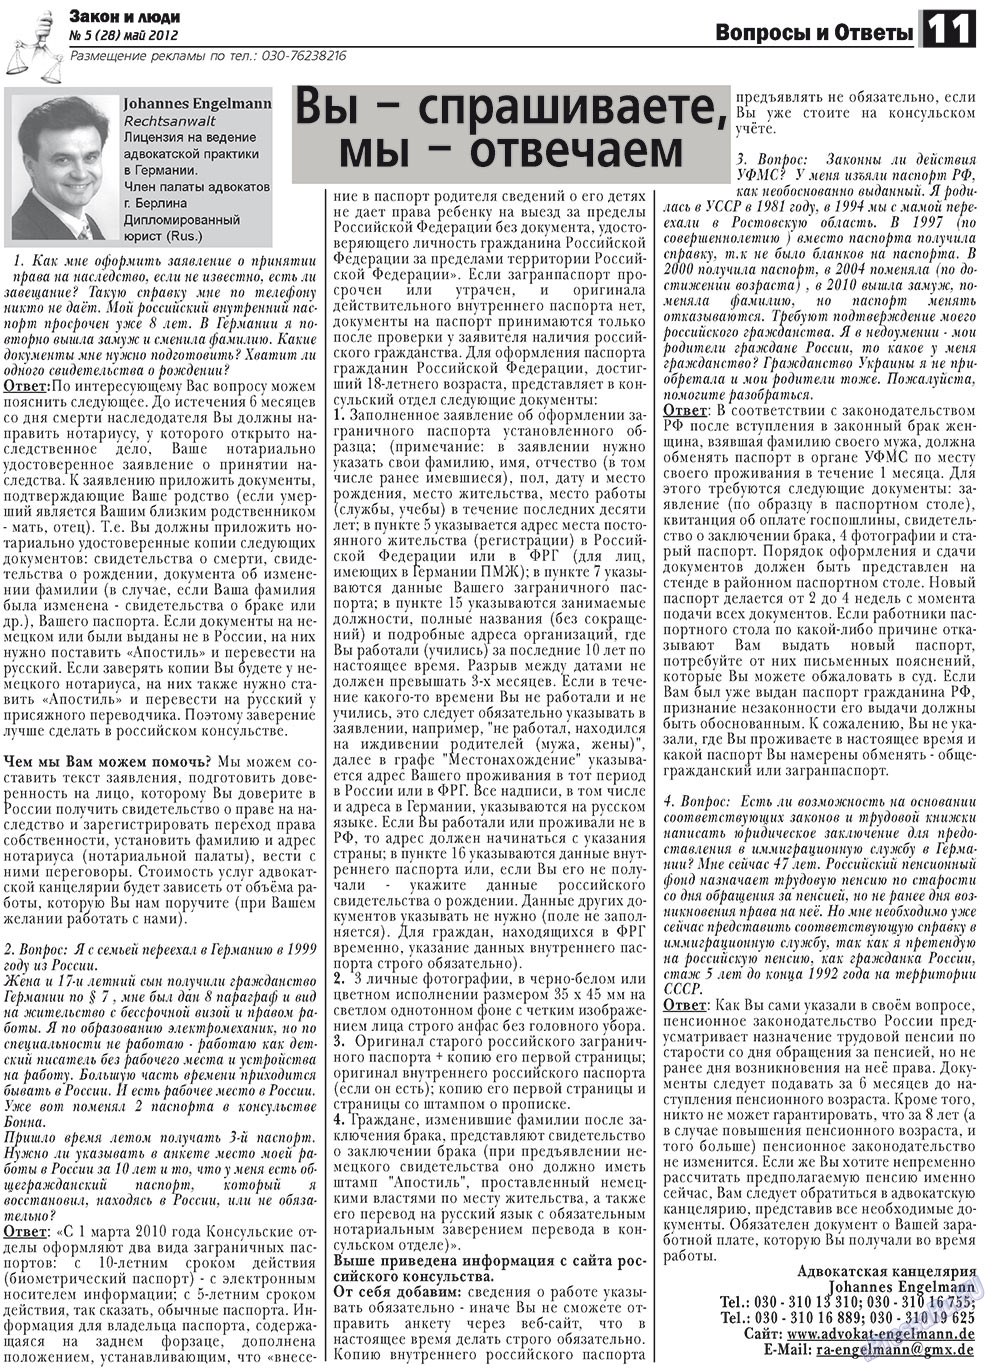 Закон и люди, газета. 2012 №5 стр.11